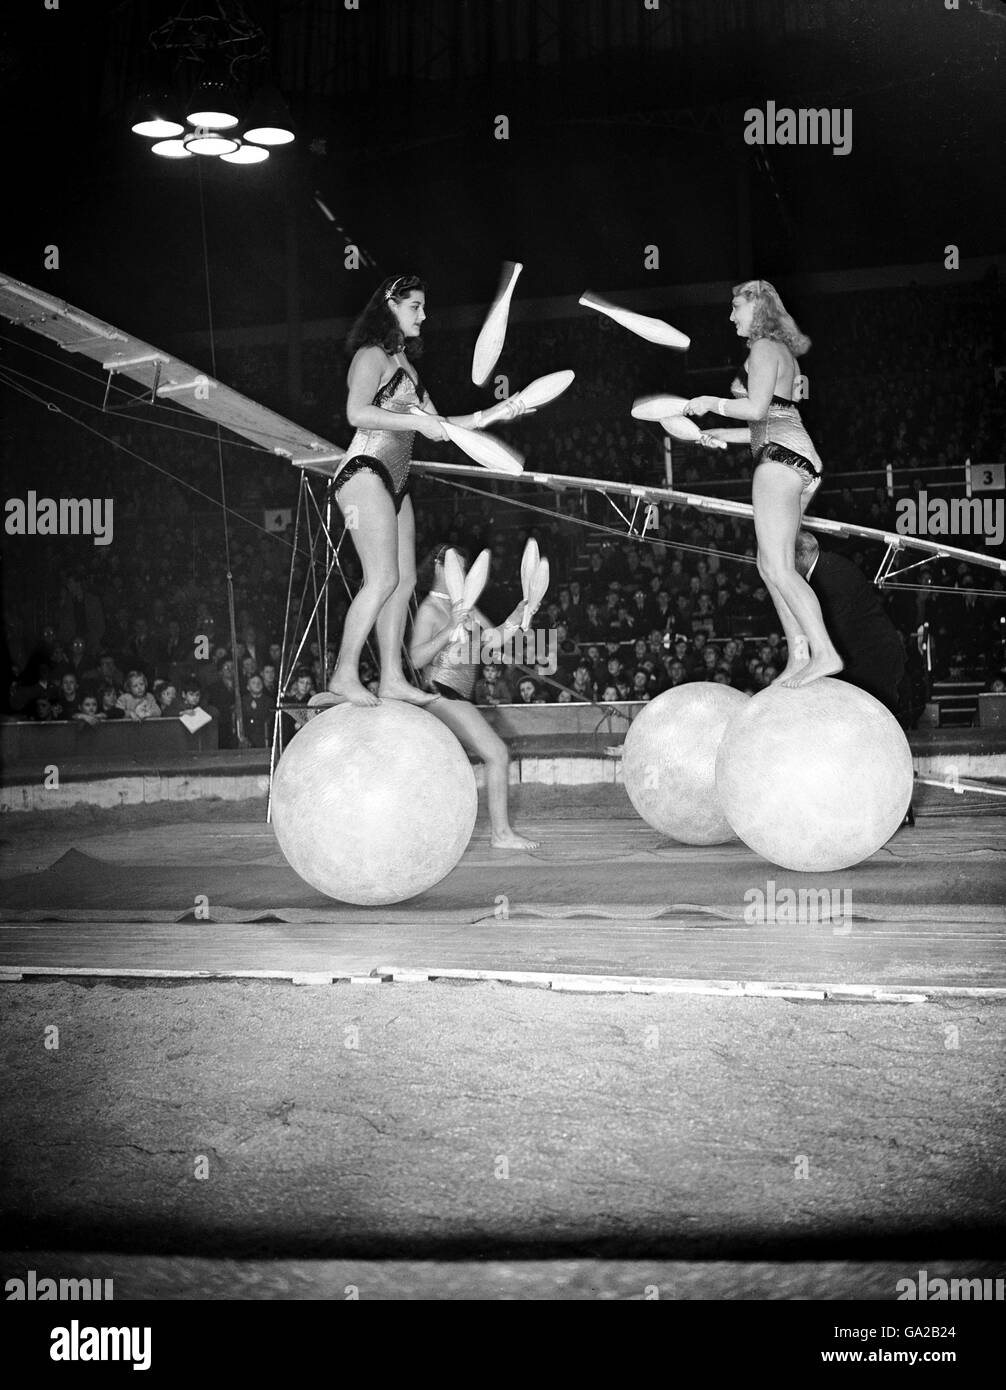 Unterhaltung - Bertram Mills Circus Probe - Olympia London. Die Rogge-Schwestern zeigen auf riesigen Bällen ihre unglaubliche Balance und ihre Jonglierkünste. Stockfoto